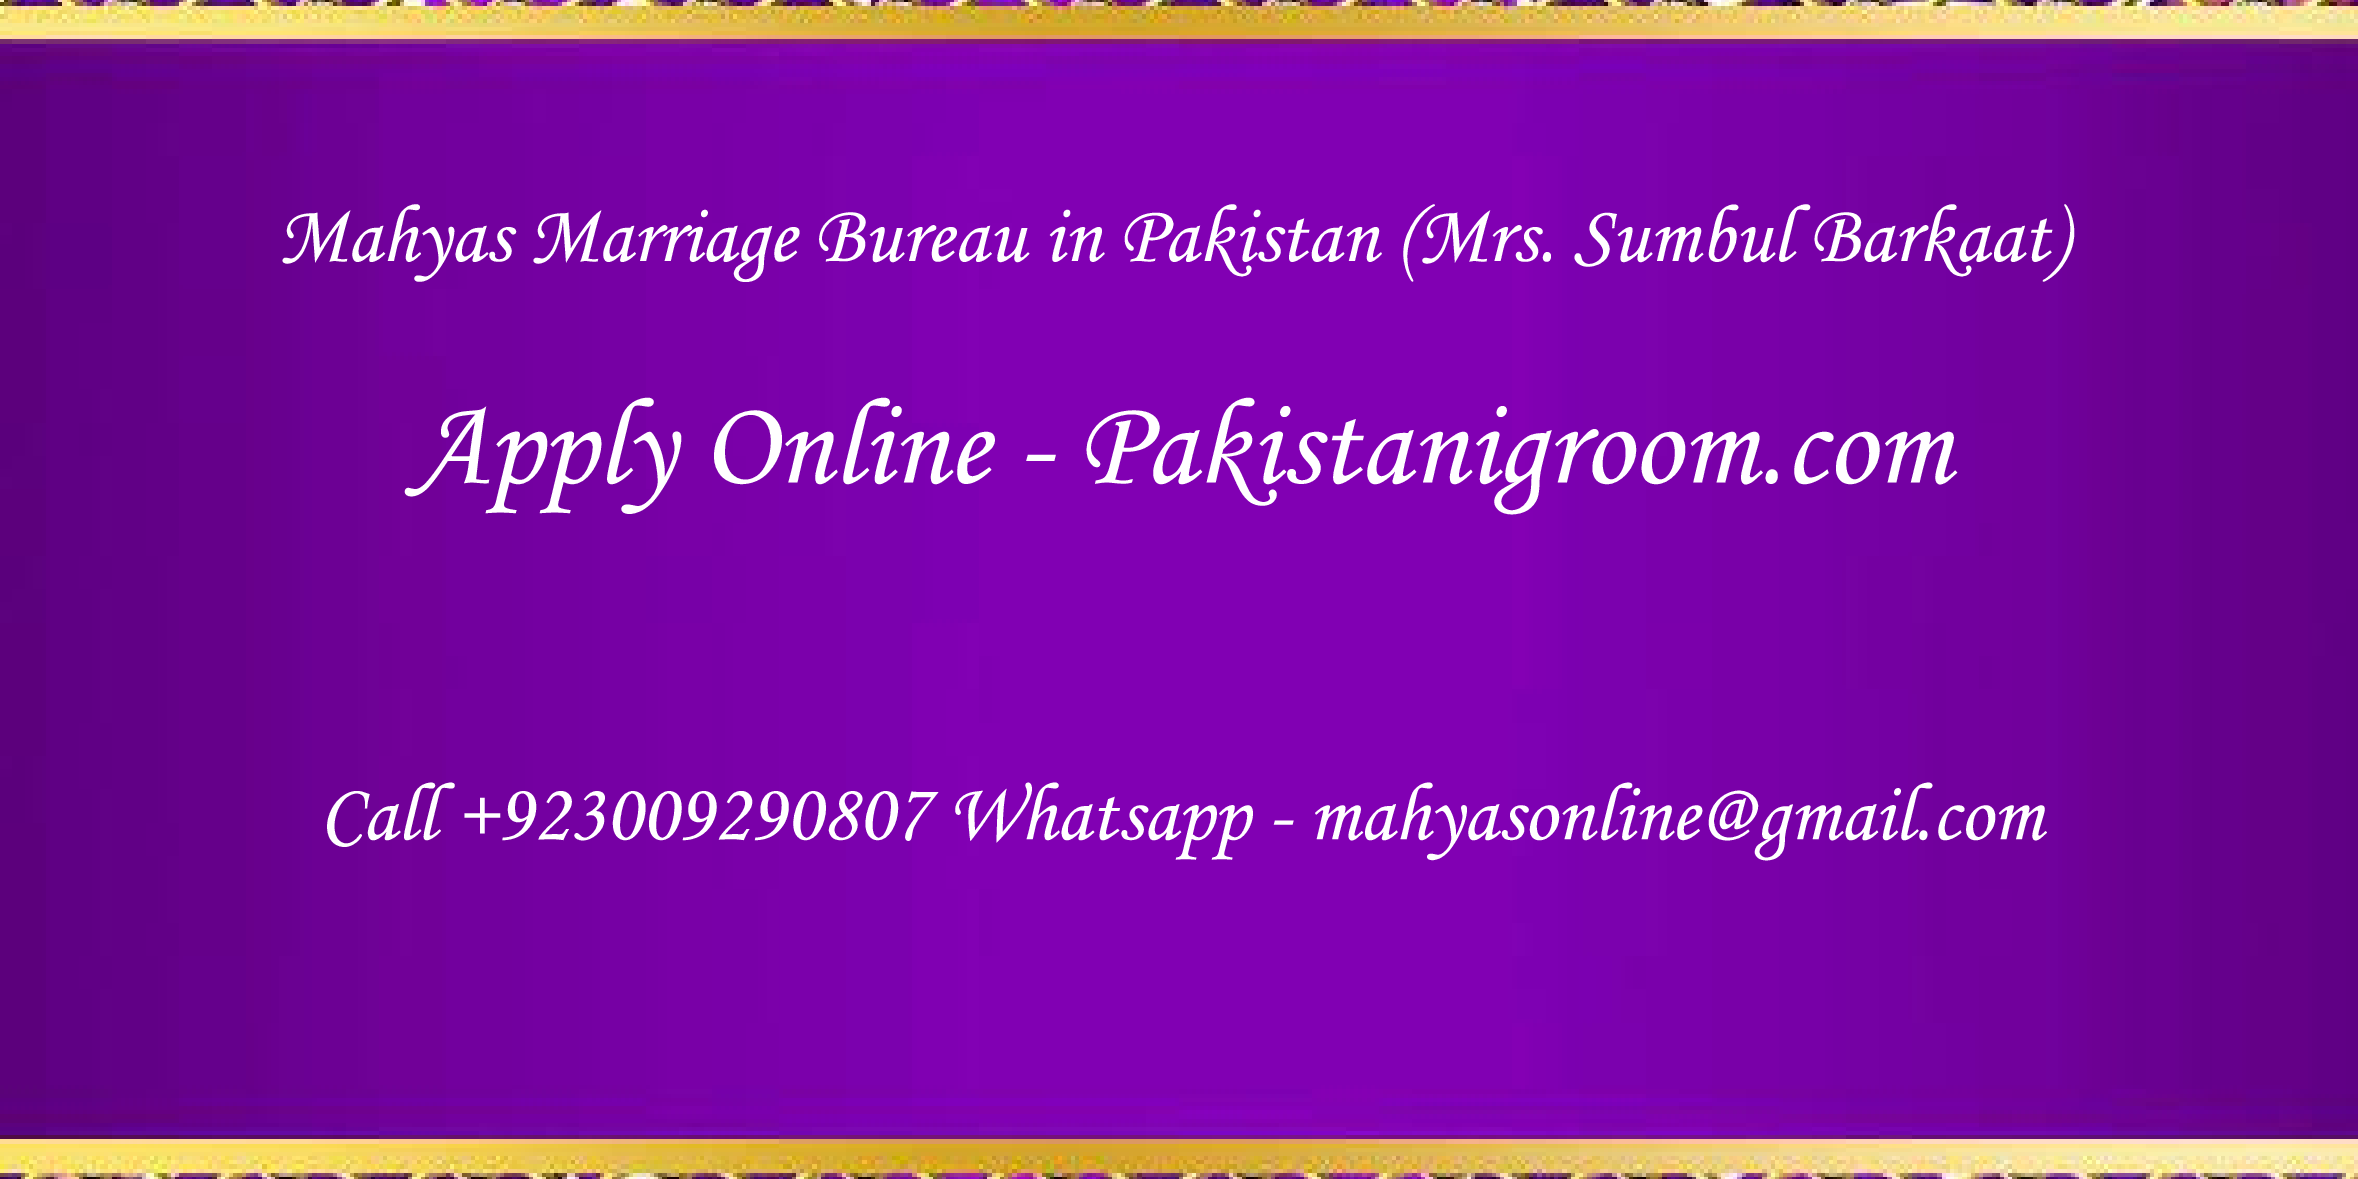 Mahyas-marriage-bureau-Karachi-Pakistan-for-Shia-Sunni-Remarriage-Divorce-Widow-Second-marriage-Punjabi-Pashto-Urdu-35.png